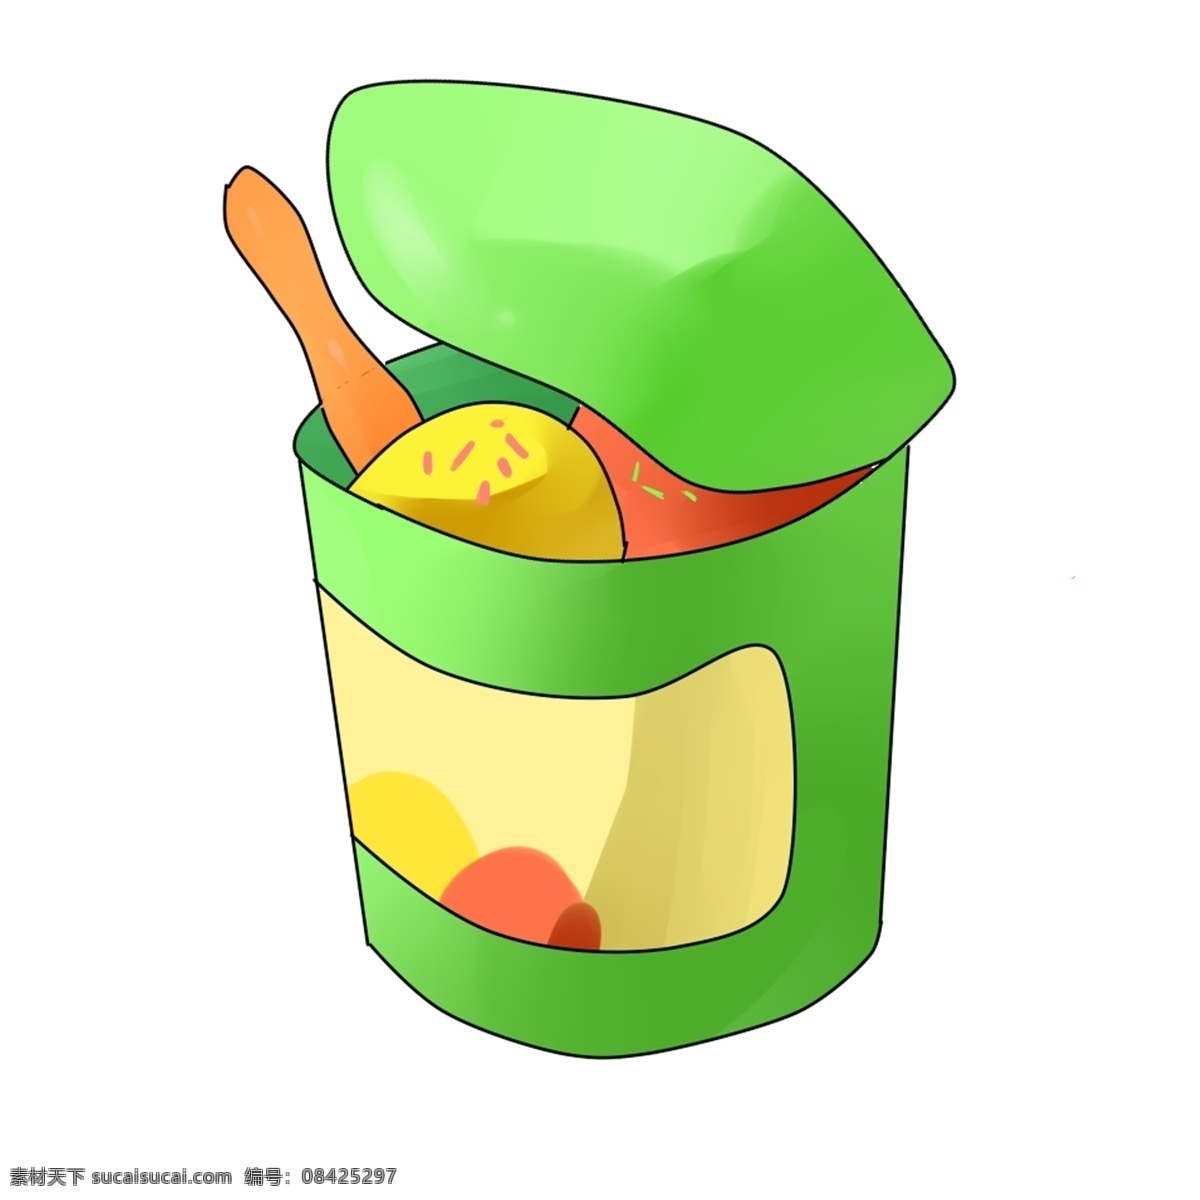 美味 小吃 冰淇淋 插画 绿色的冰淇淋 卡通插画 小吃插画 美味插画 美食插画 食品插画 圆形的盒子